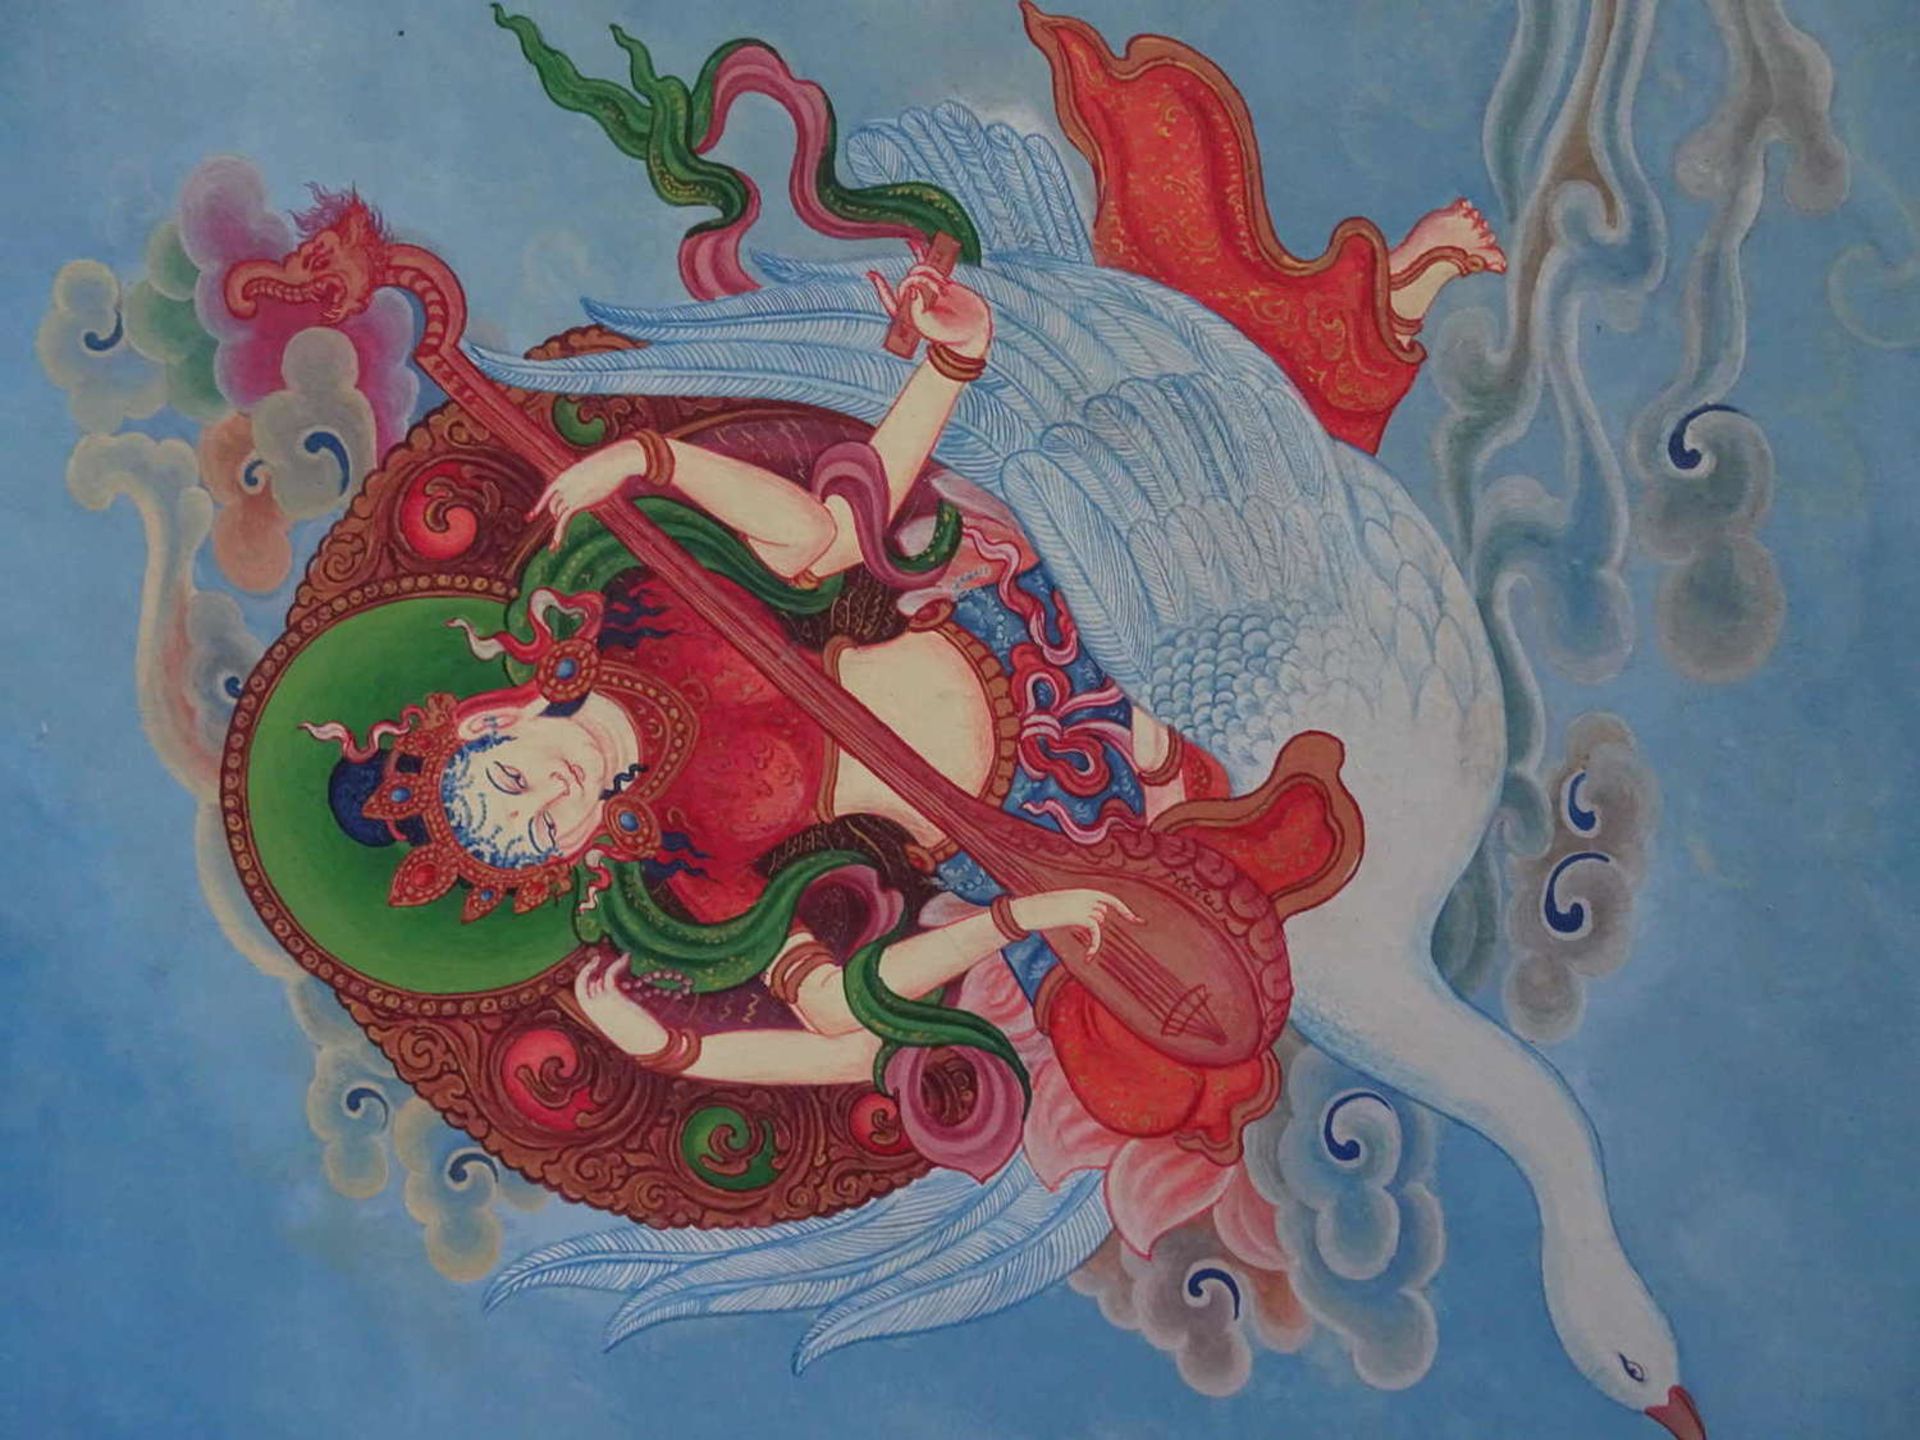 Nepal - Kreidefarben Bild, "Göttin mit Schwan", rechts unten Signatur. Wohl Klostermalerei. Sehr - Bild 2 aus 3